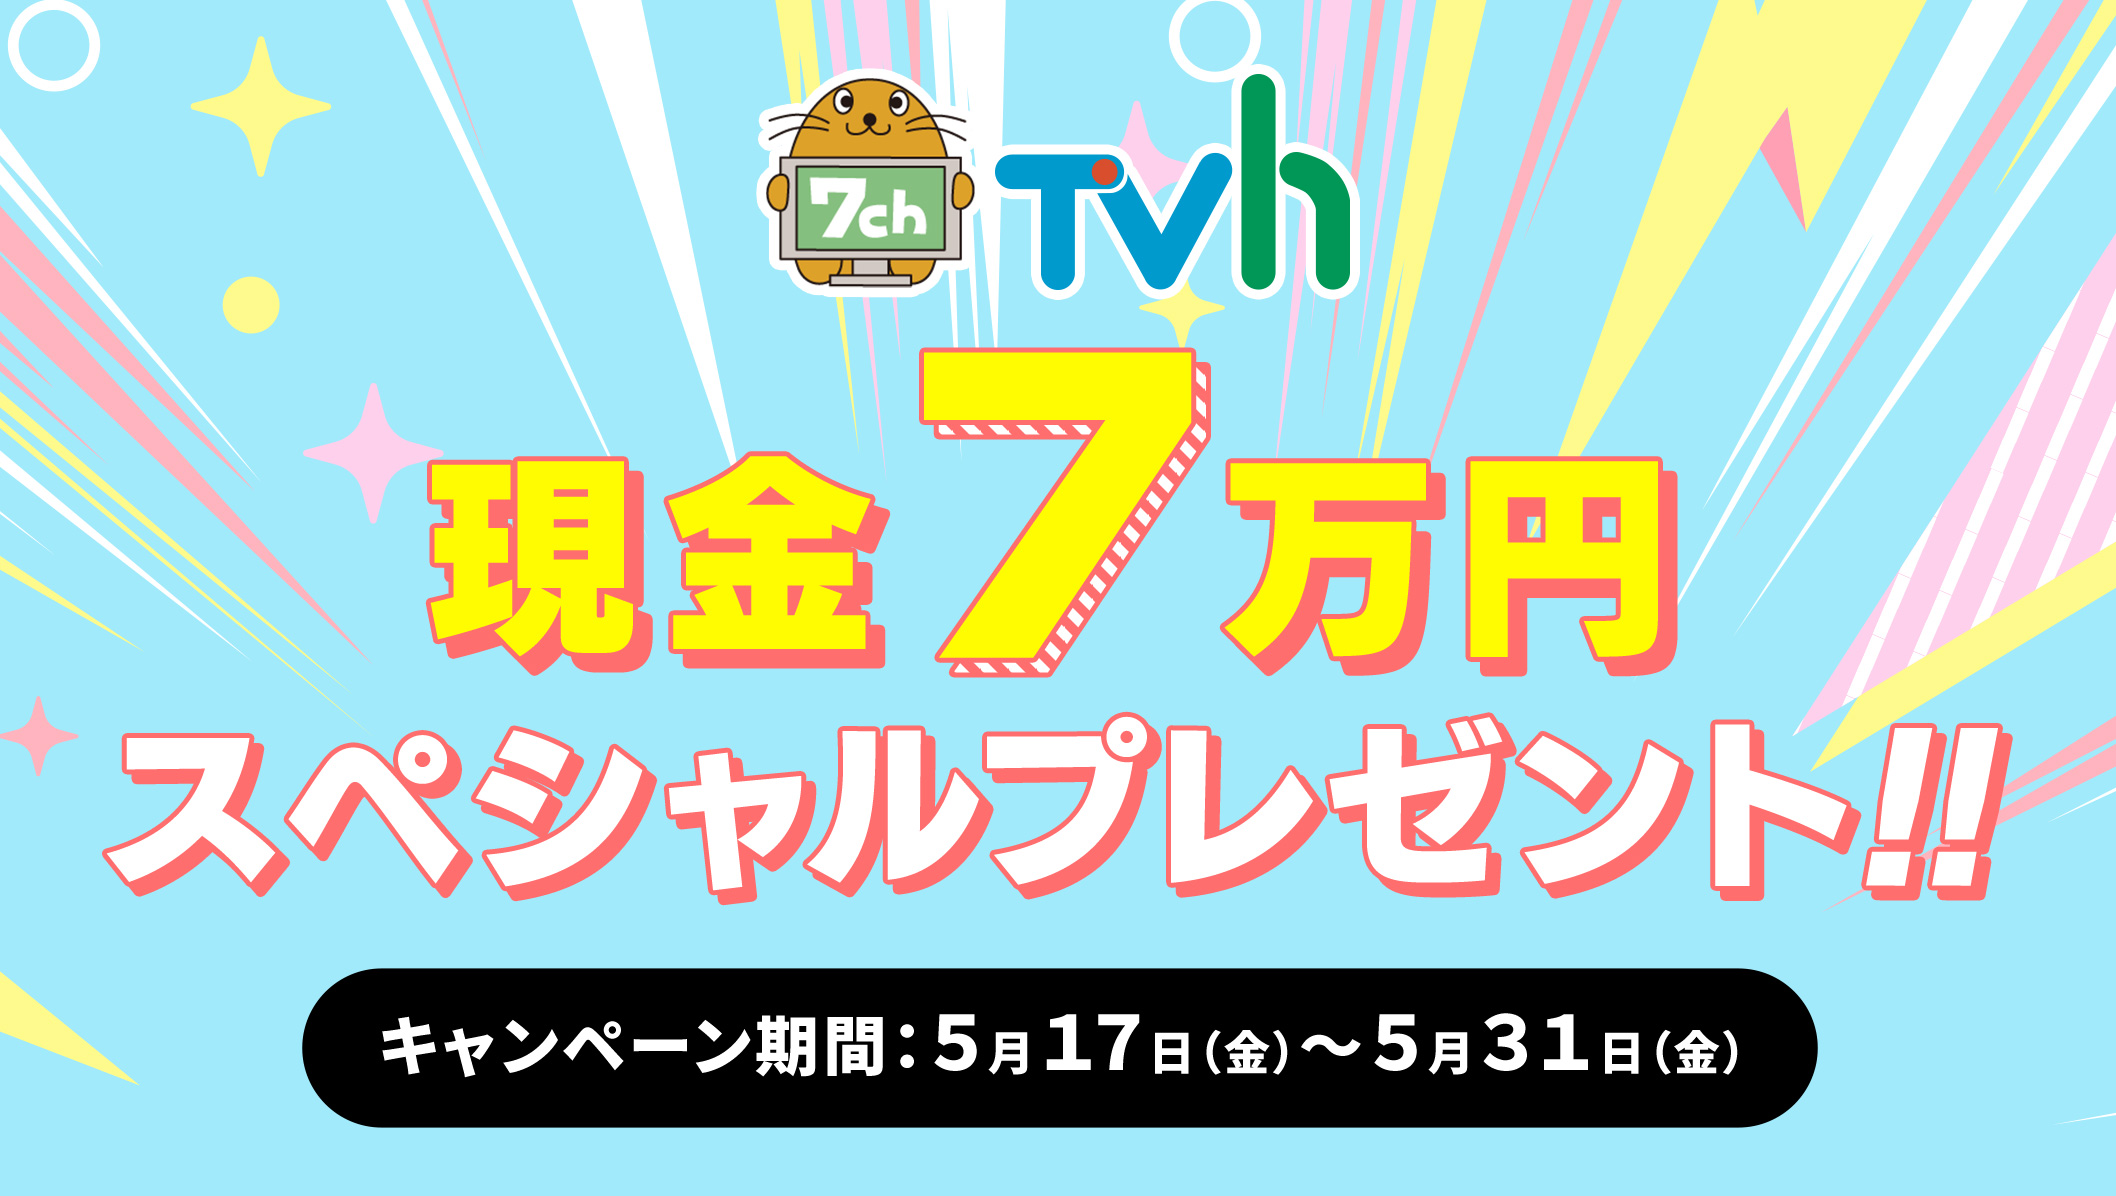 TVh 現金7万円スペシャルプレゼント！キャンペーン期間5月17日(金)～5月31日(金)